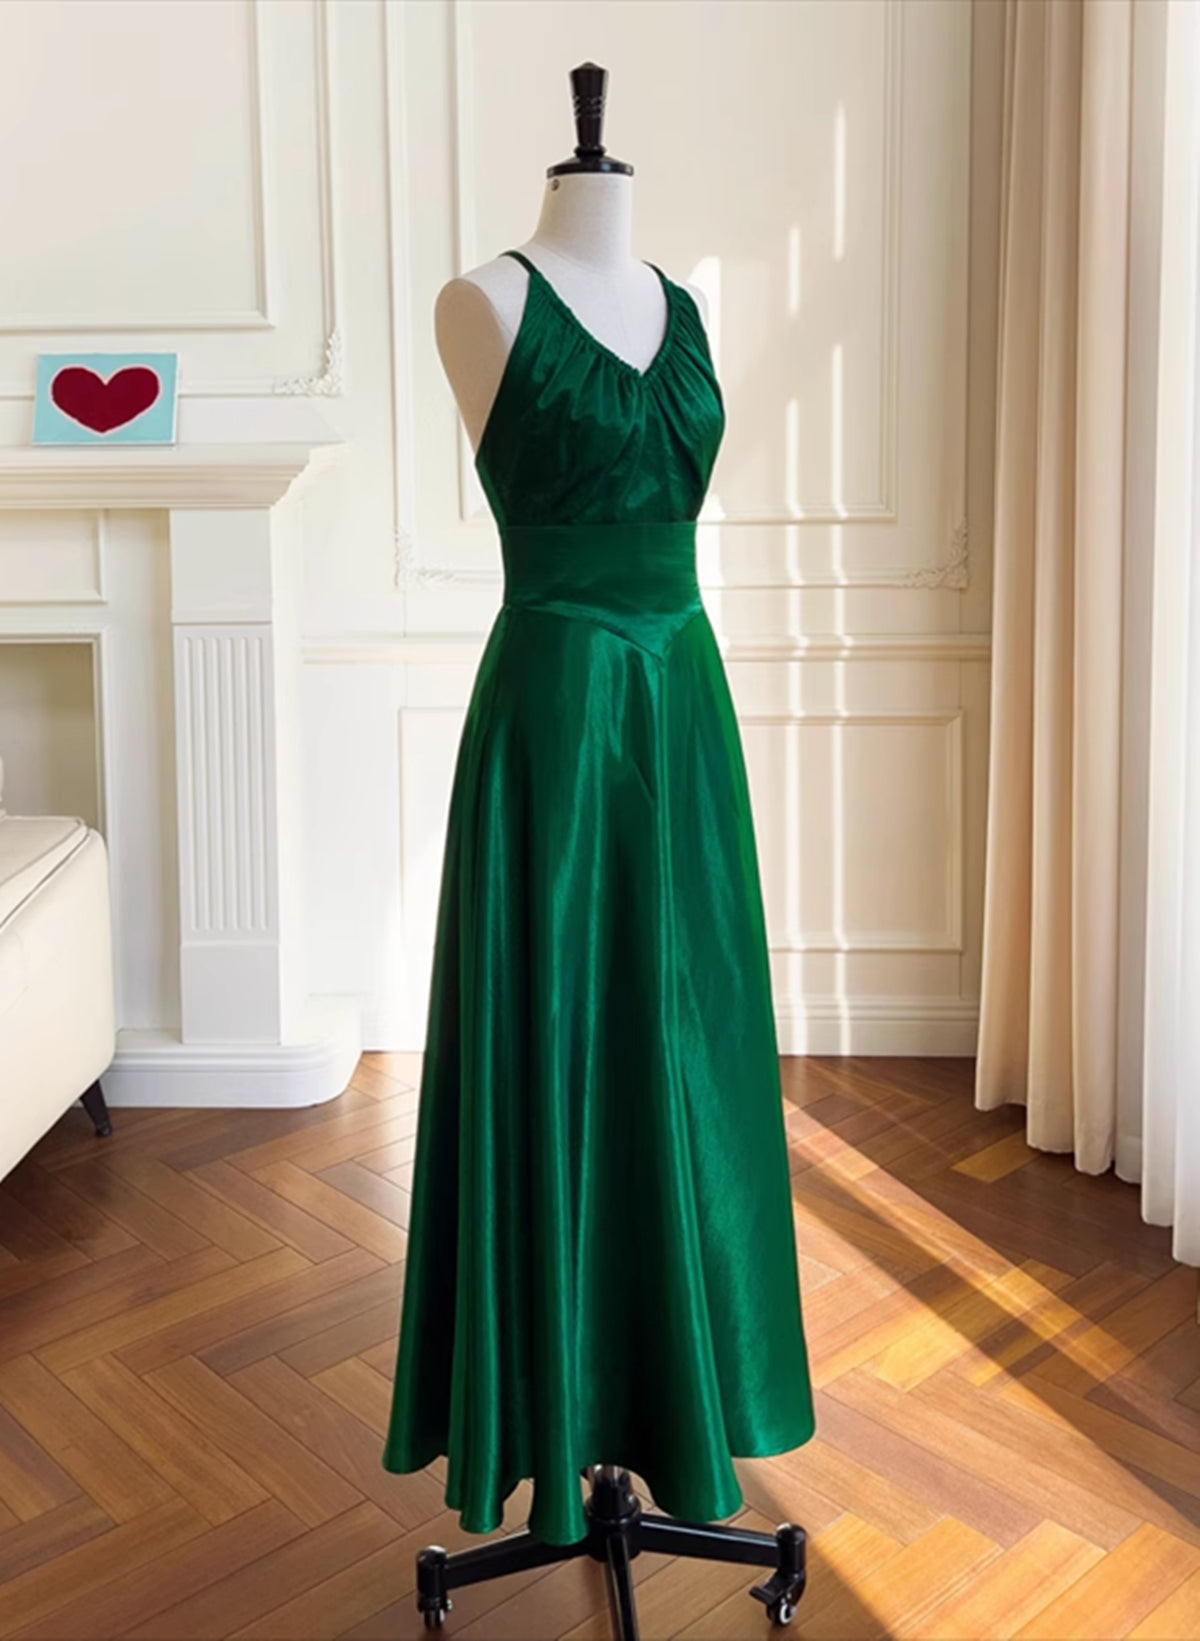 Bridesmaid Dress Shop, Green A-line Soft Satin Cross Back Evening Dress, Green Prom Dress Party Dress